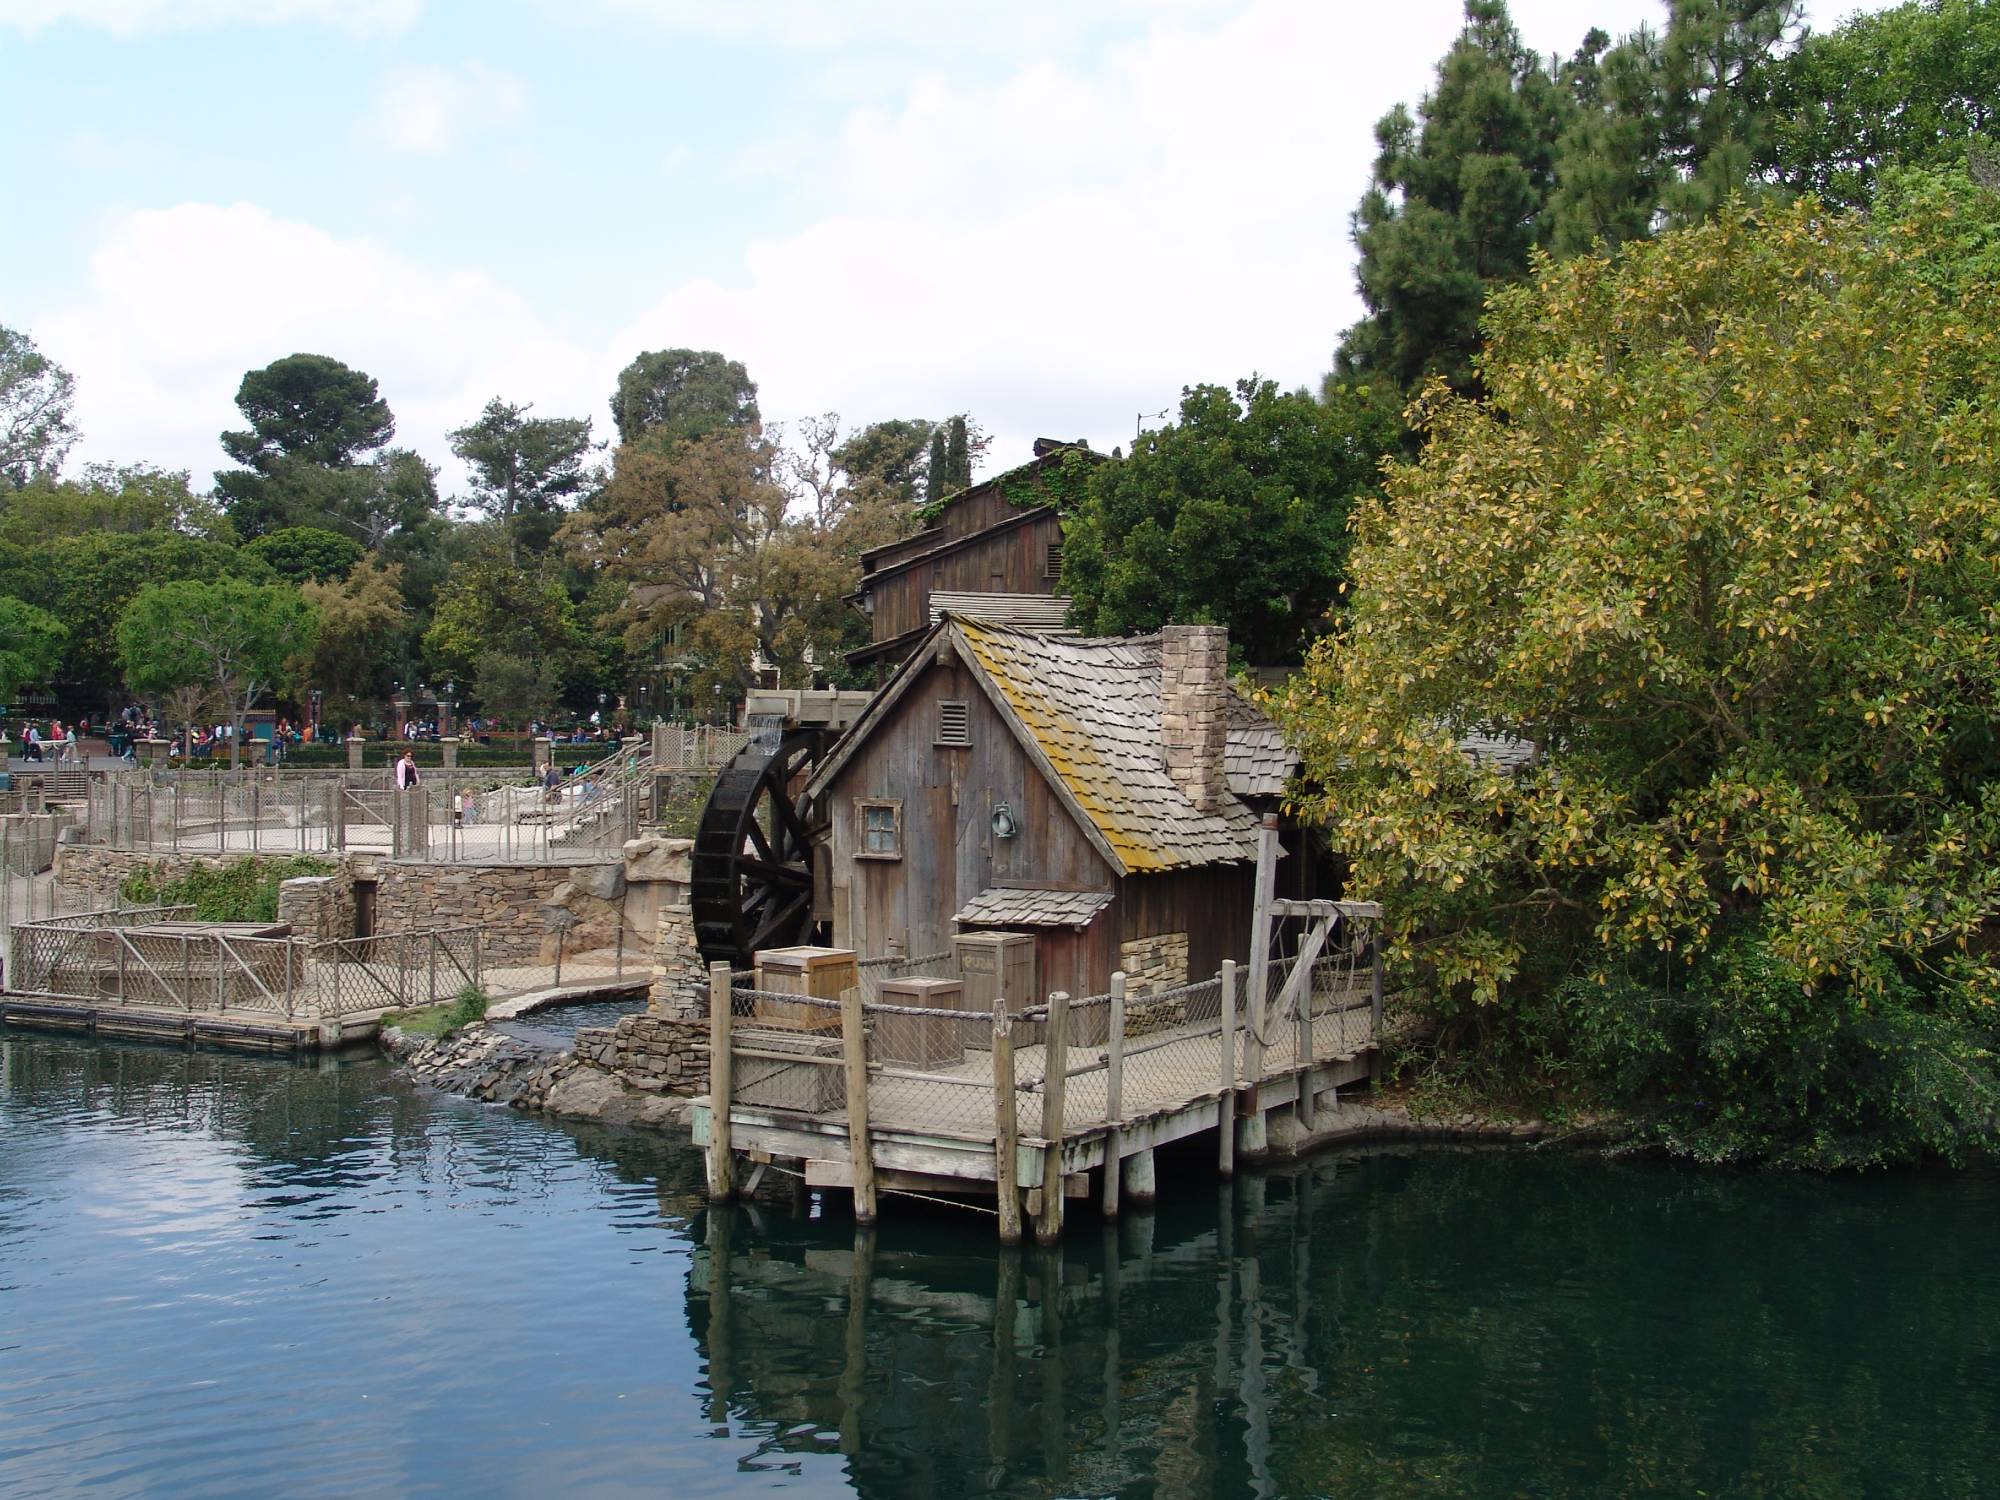 Disneyland - Tom Sawyer Island